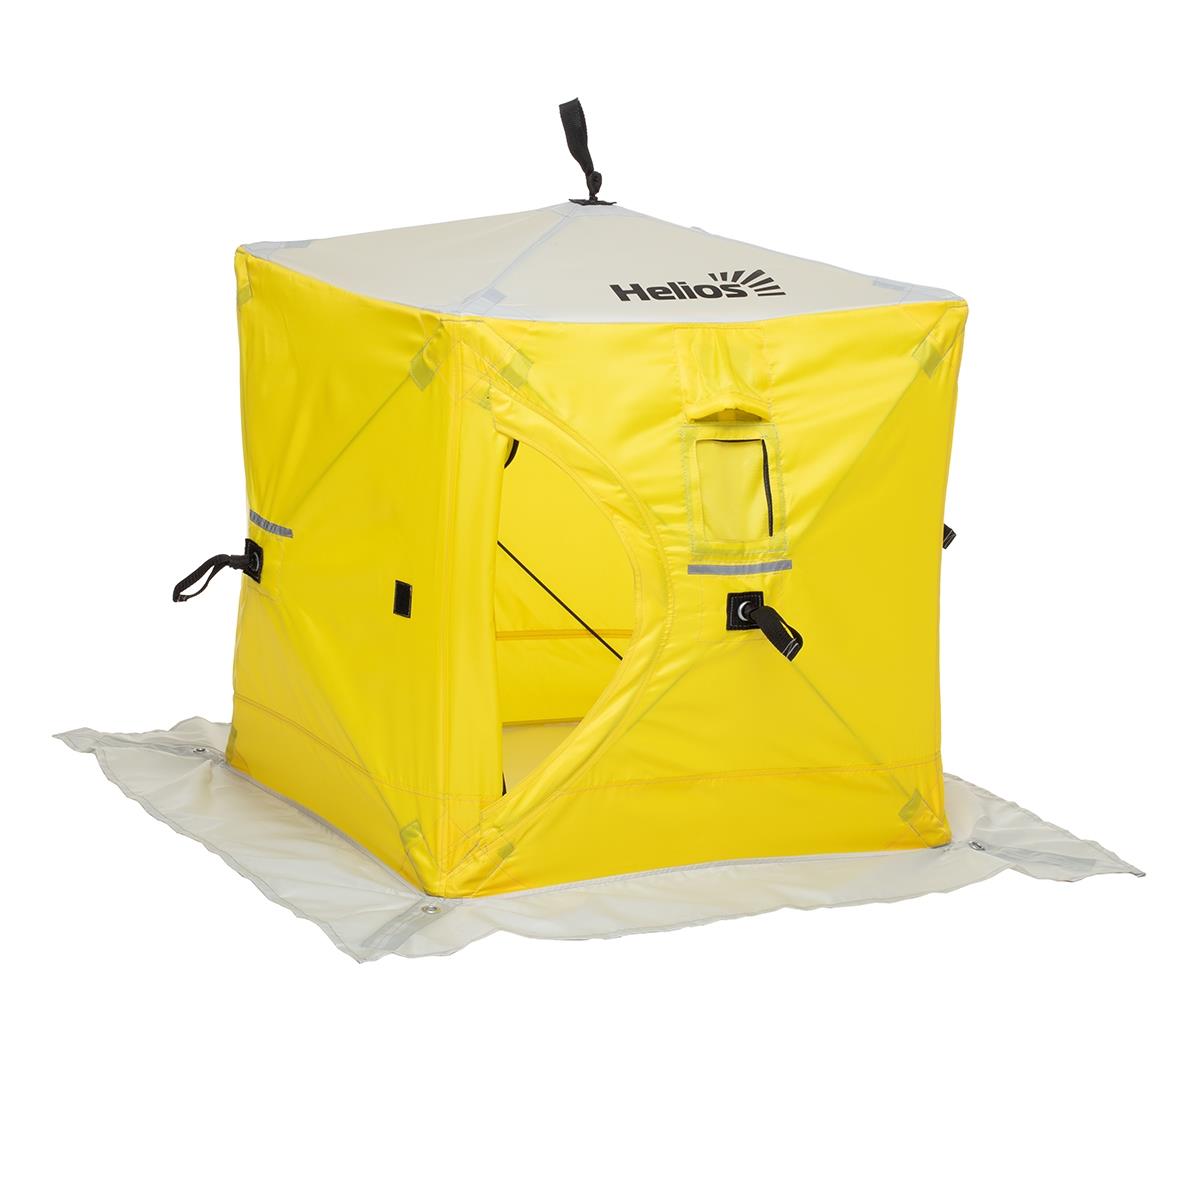 Мини палатка yellow/gray Helios палатка игровая наша игрушка пчелкин домик